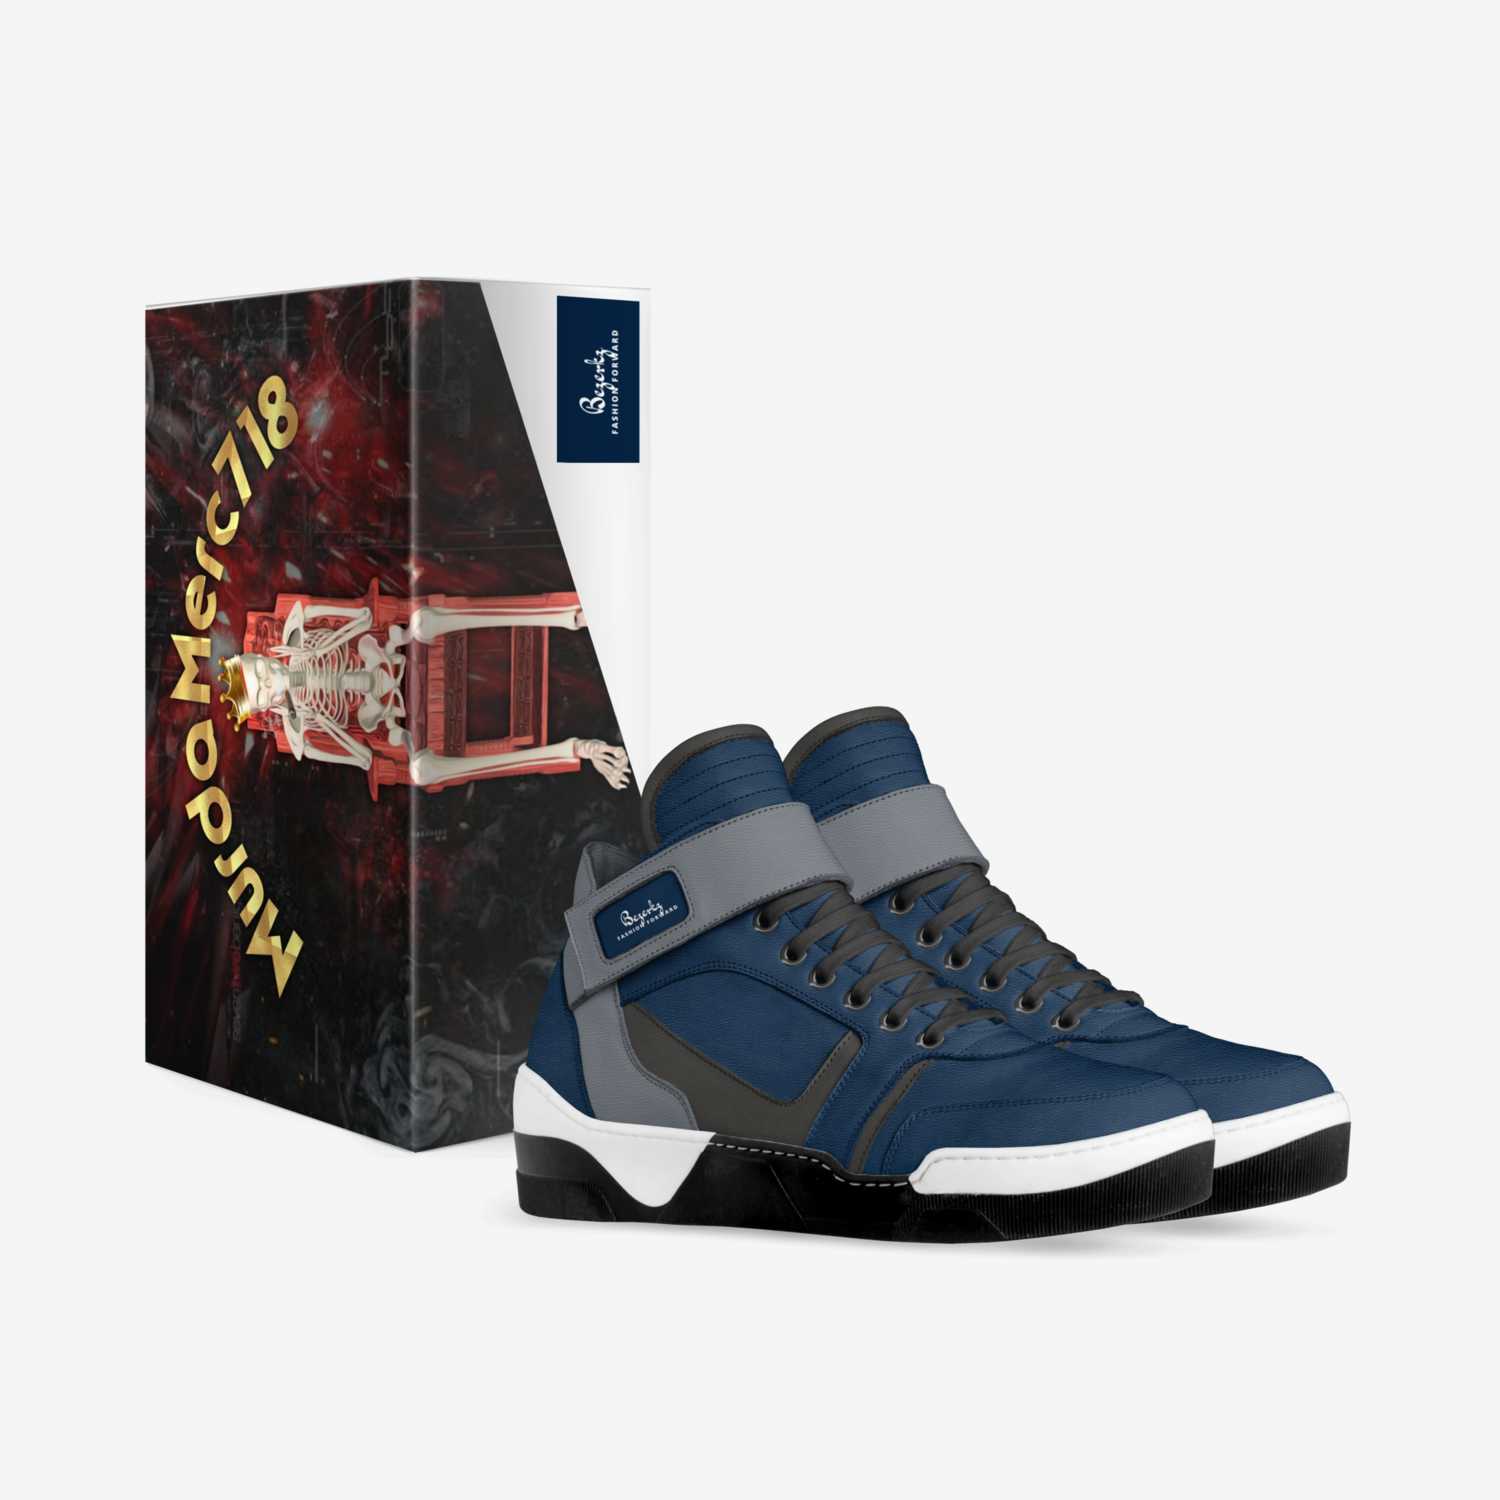 Bezerkz custom made in Italy shoes by Marc Esposito | Box view